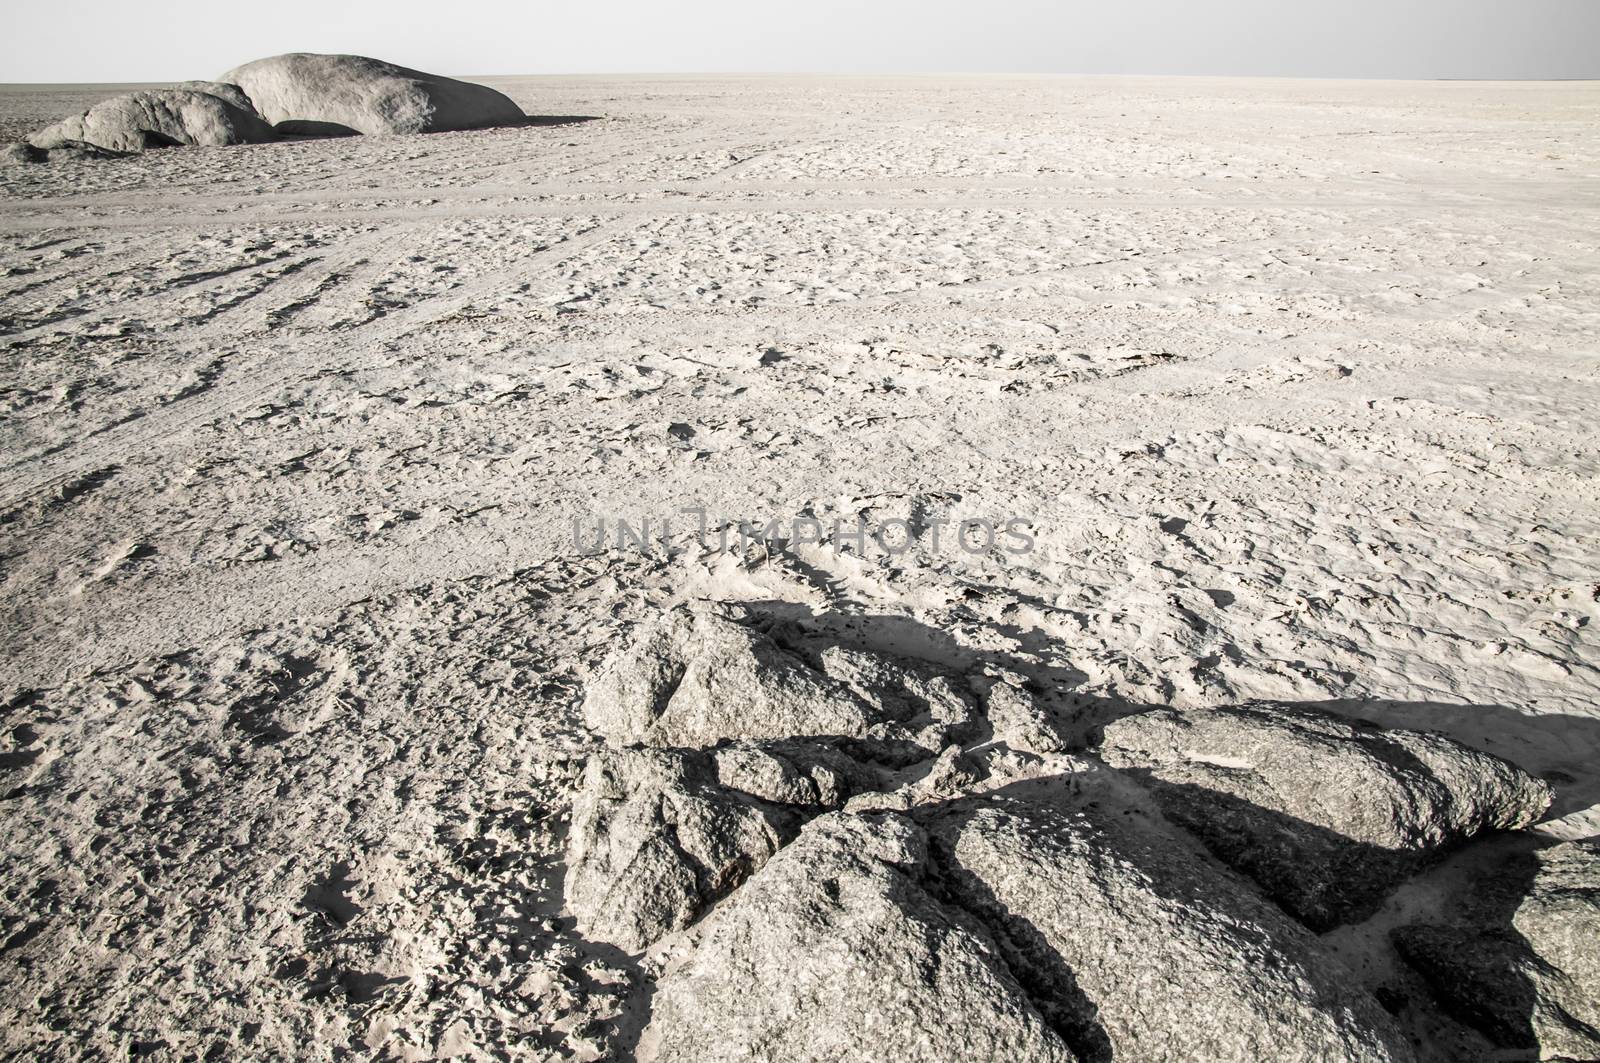 Rocks cropping out in a barren salt pan landscape in Botswana.